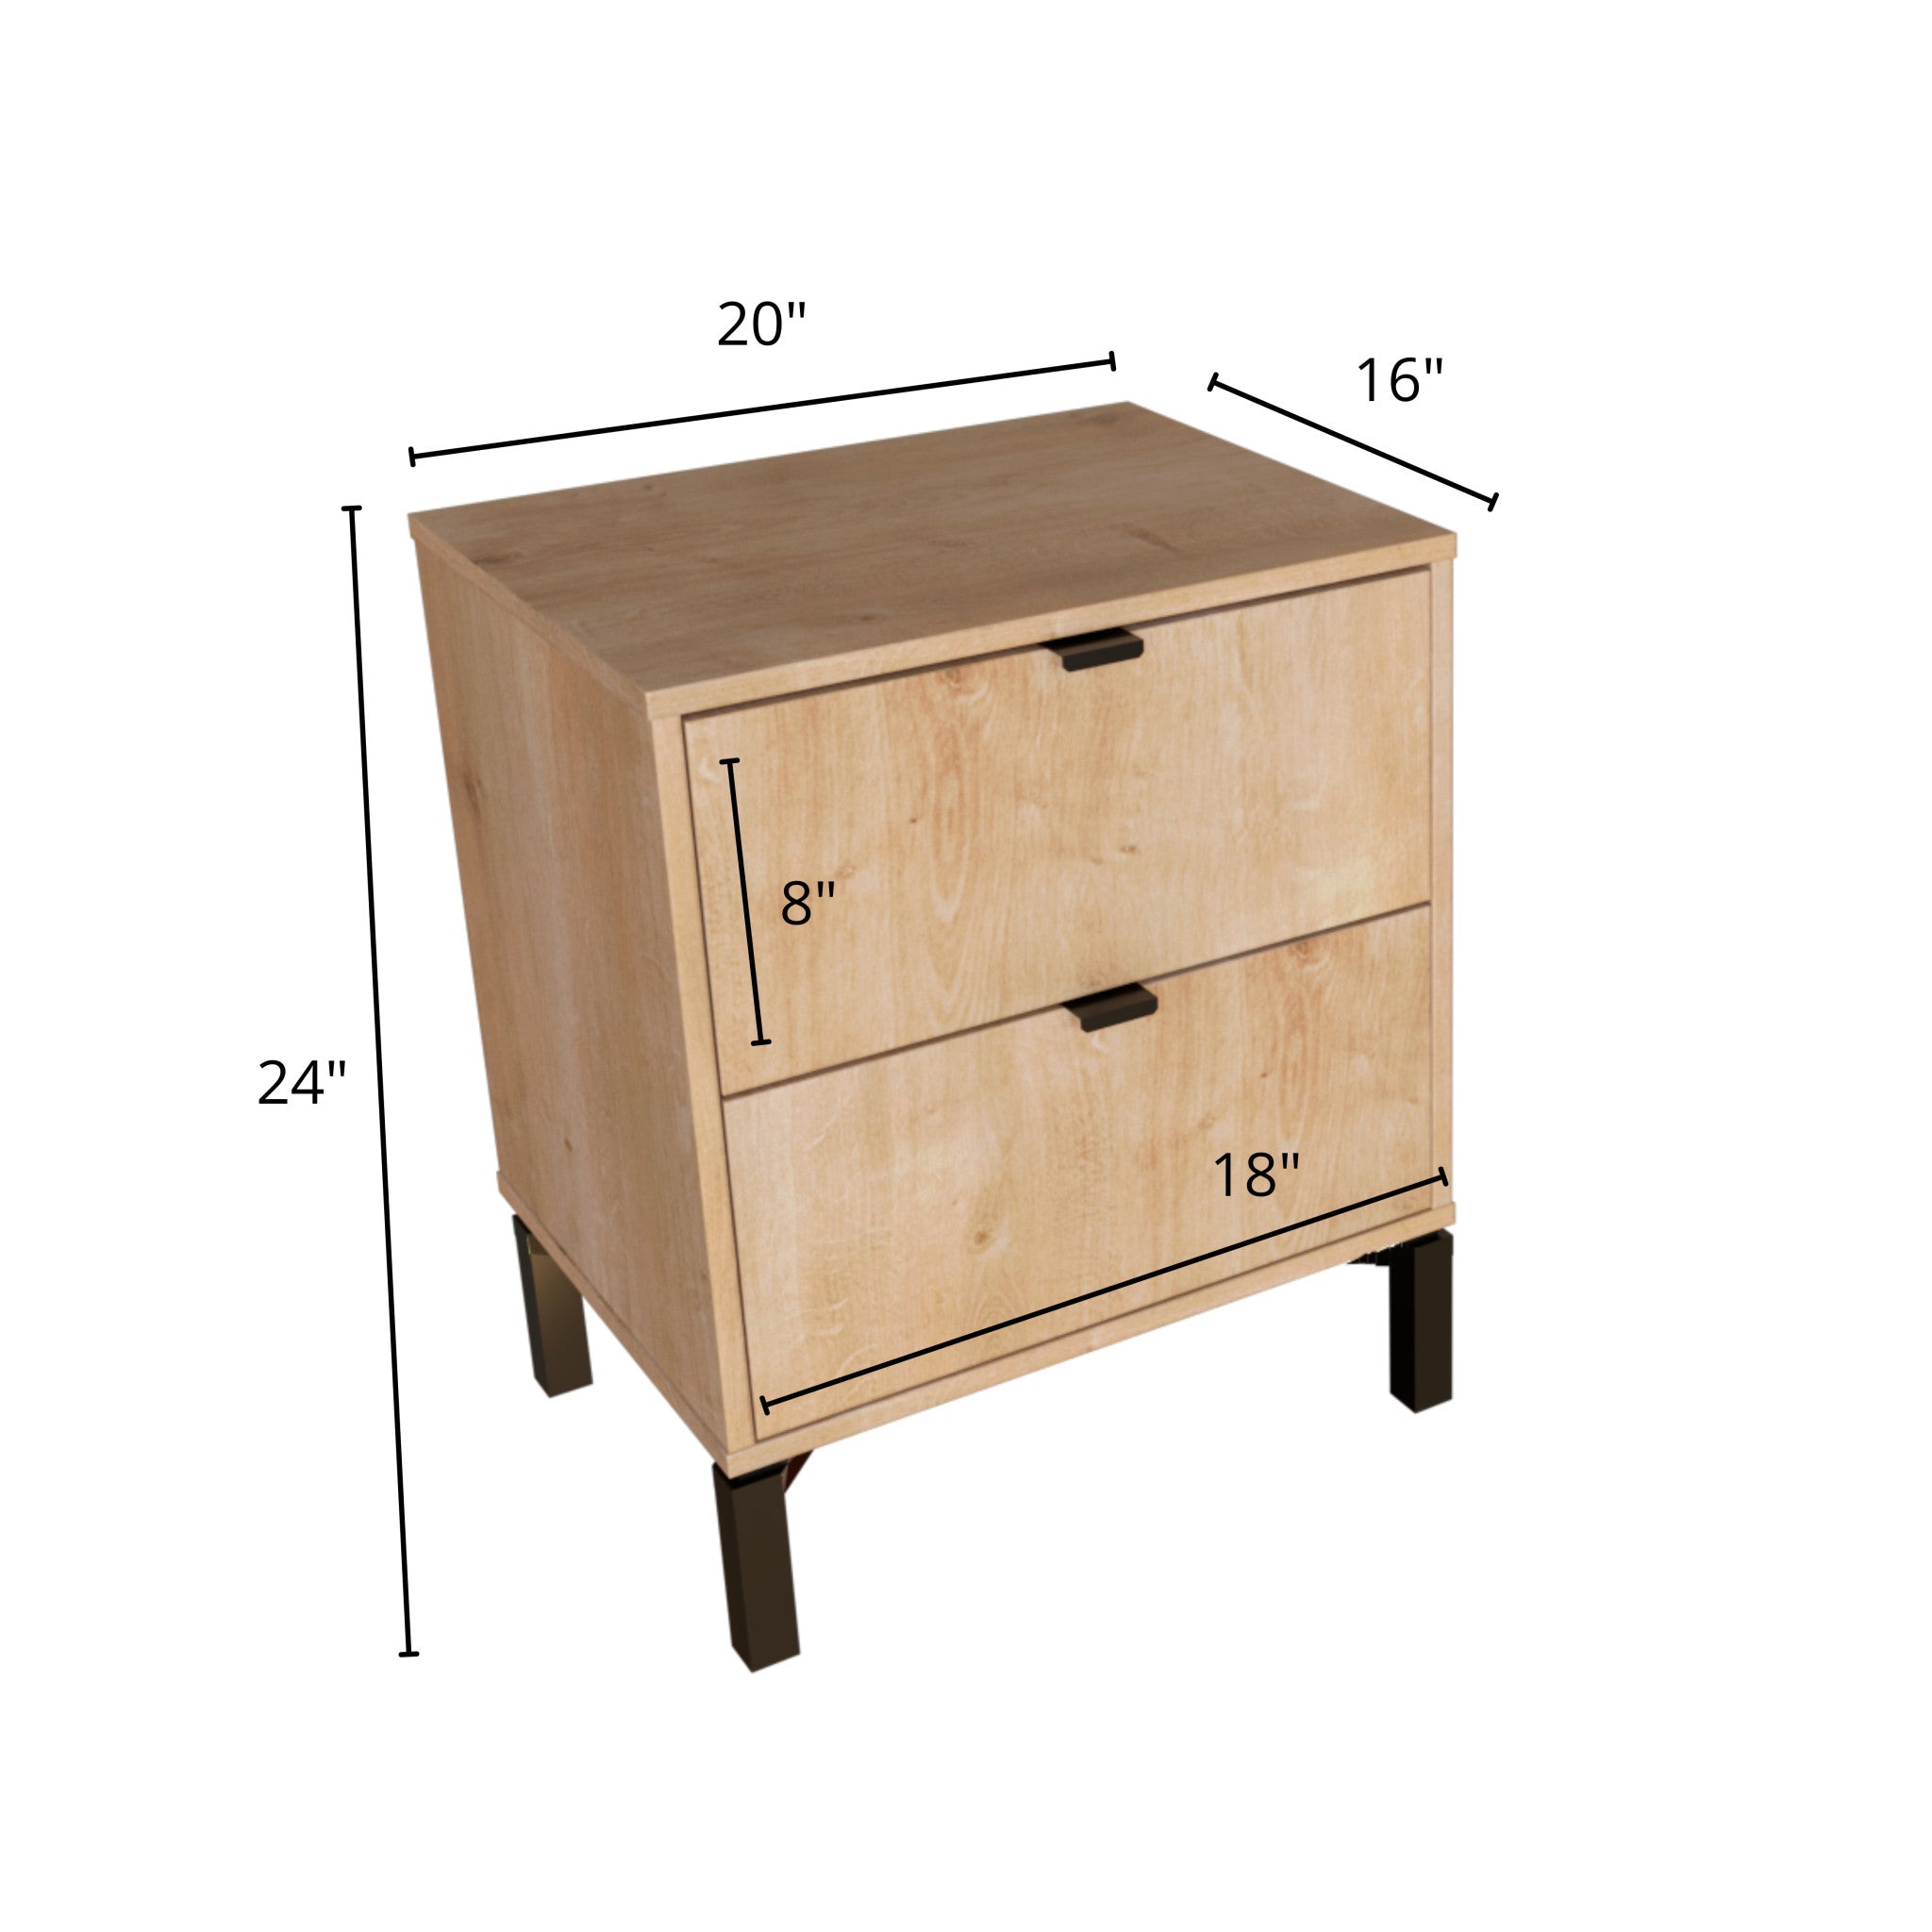 24" Oak Two Drawer Faux Wood Nightstand